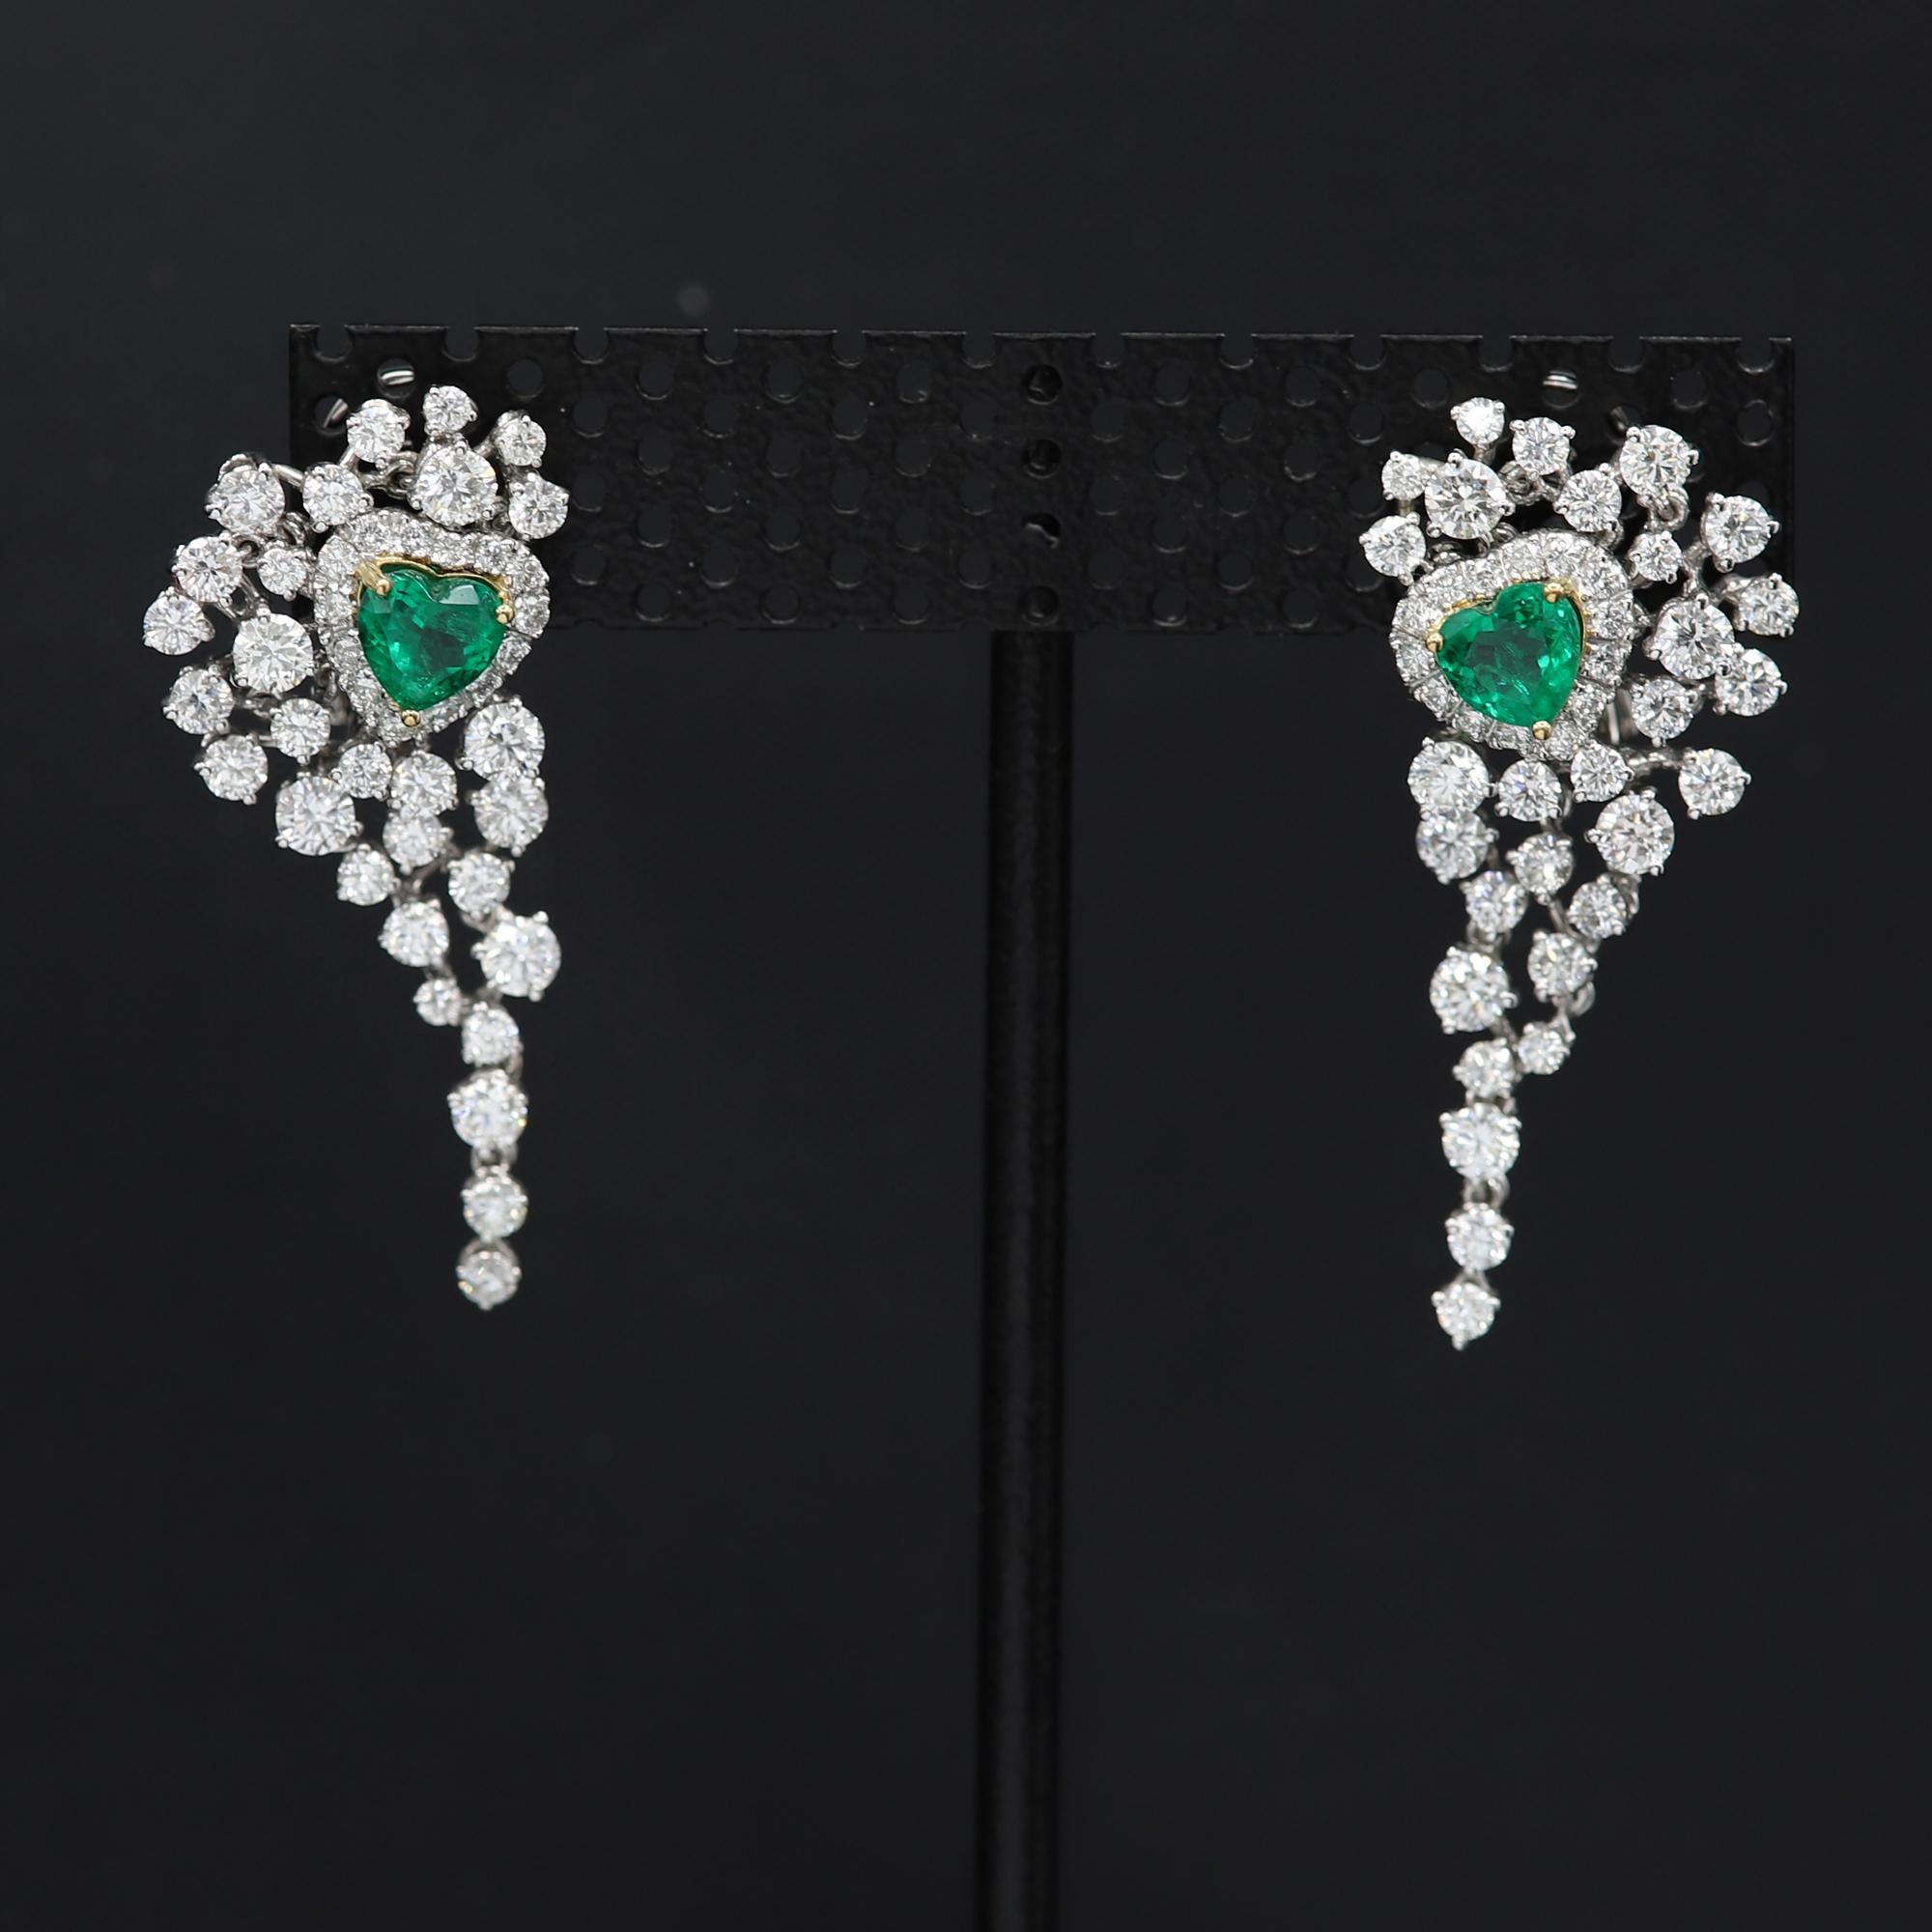 Heart Shape Emerald Earrings Dangling Diamond Earrings 18 Karat White Gold 3